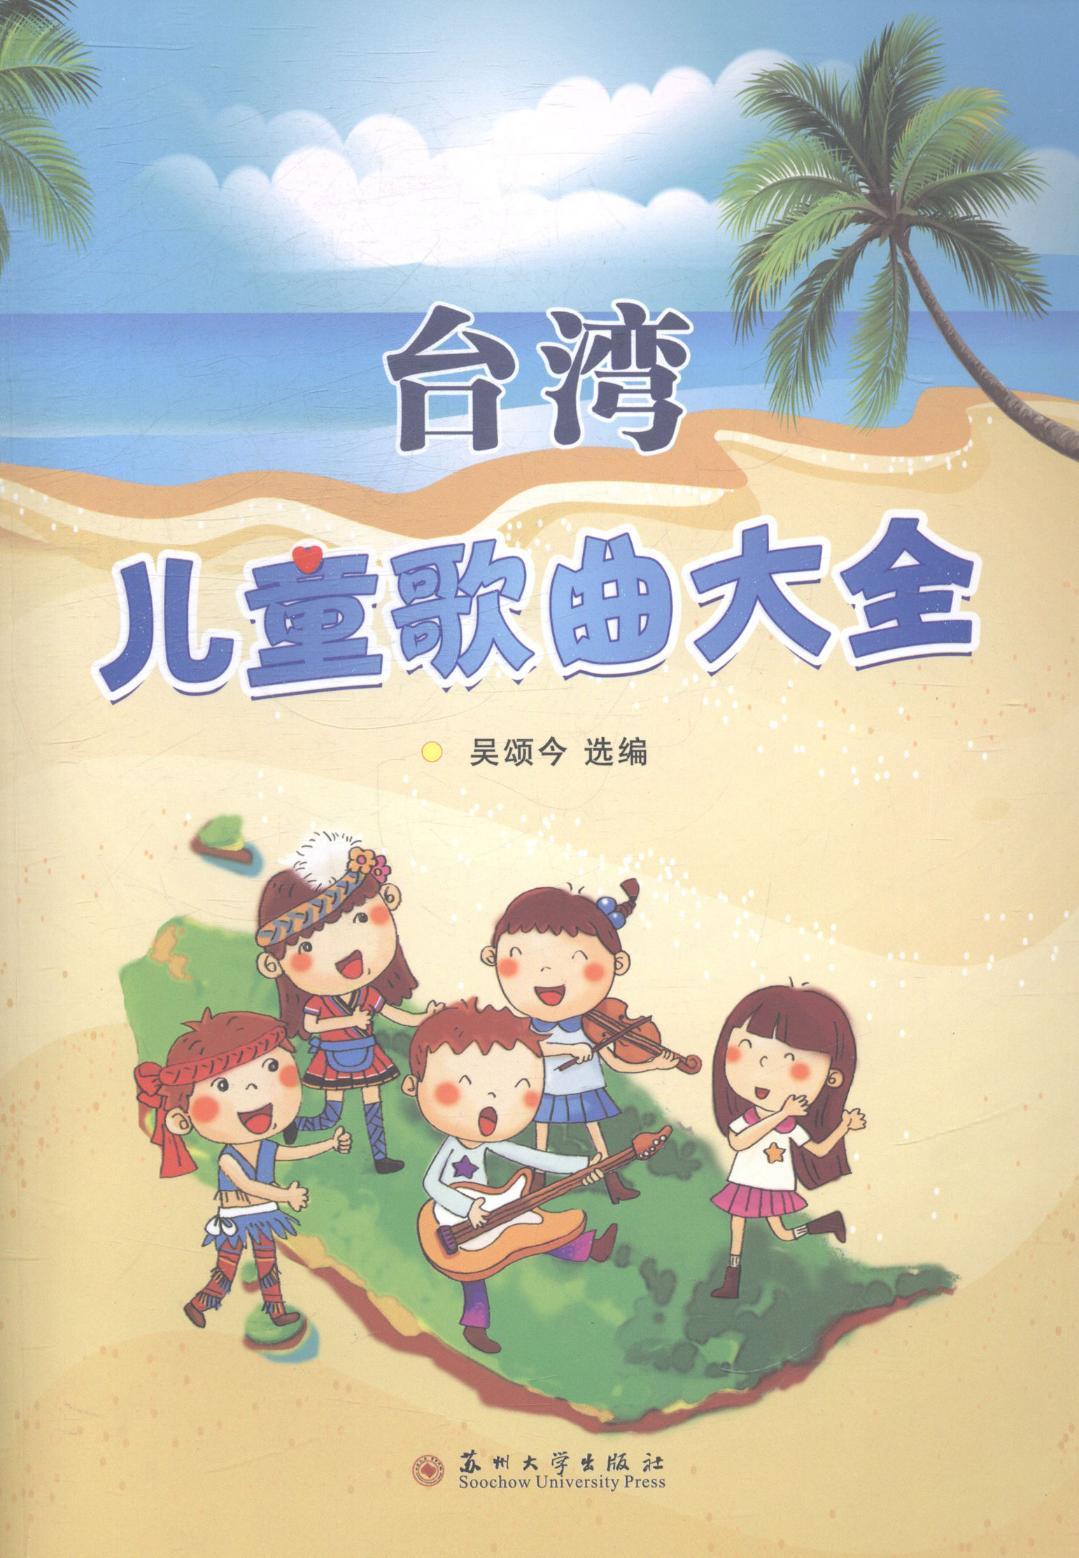 RT69包邮 台湾儿童歌曲大全苏州大学出版社艺术图书书籍